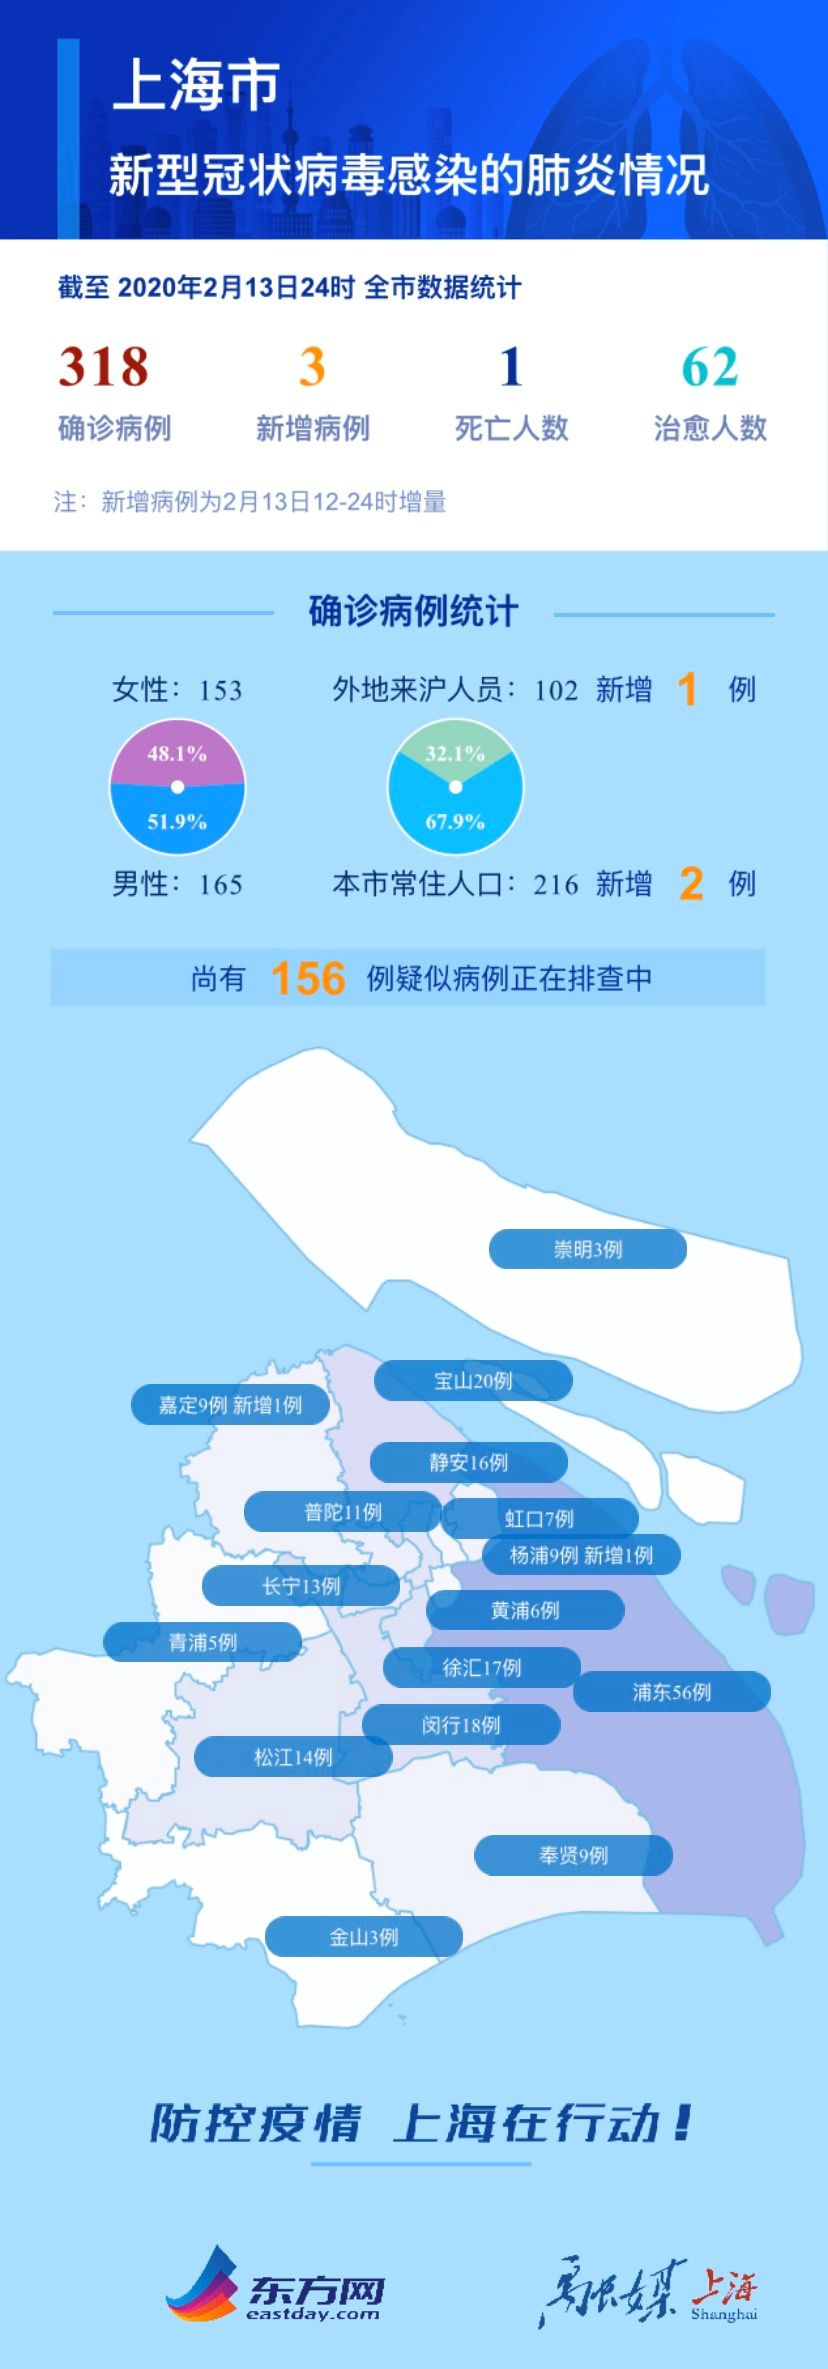 最新!上海增3例,累计318例!传播"沪疫情大暴发"谣言者